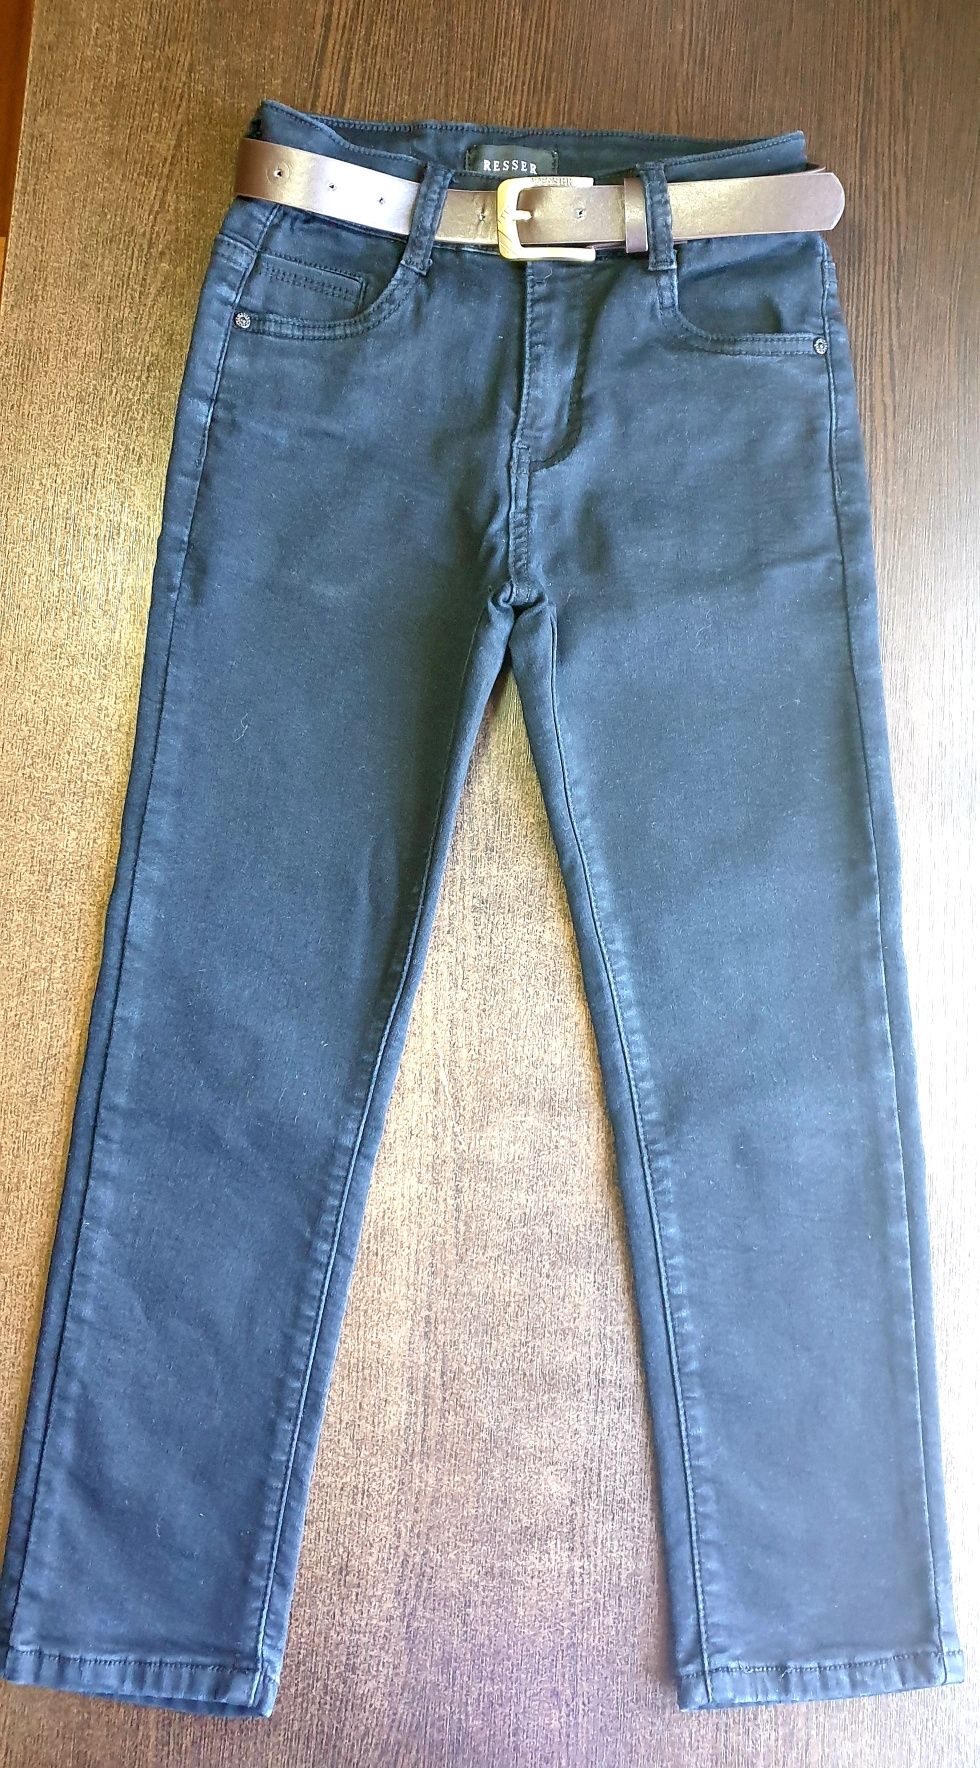 Школьные джинсы Resser, A-yugi, Mayoral, Denim на рост 126-132 см